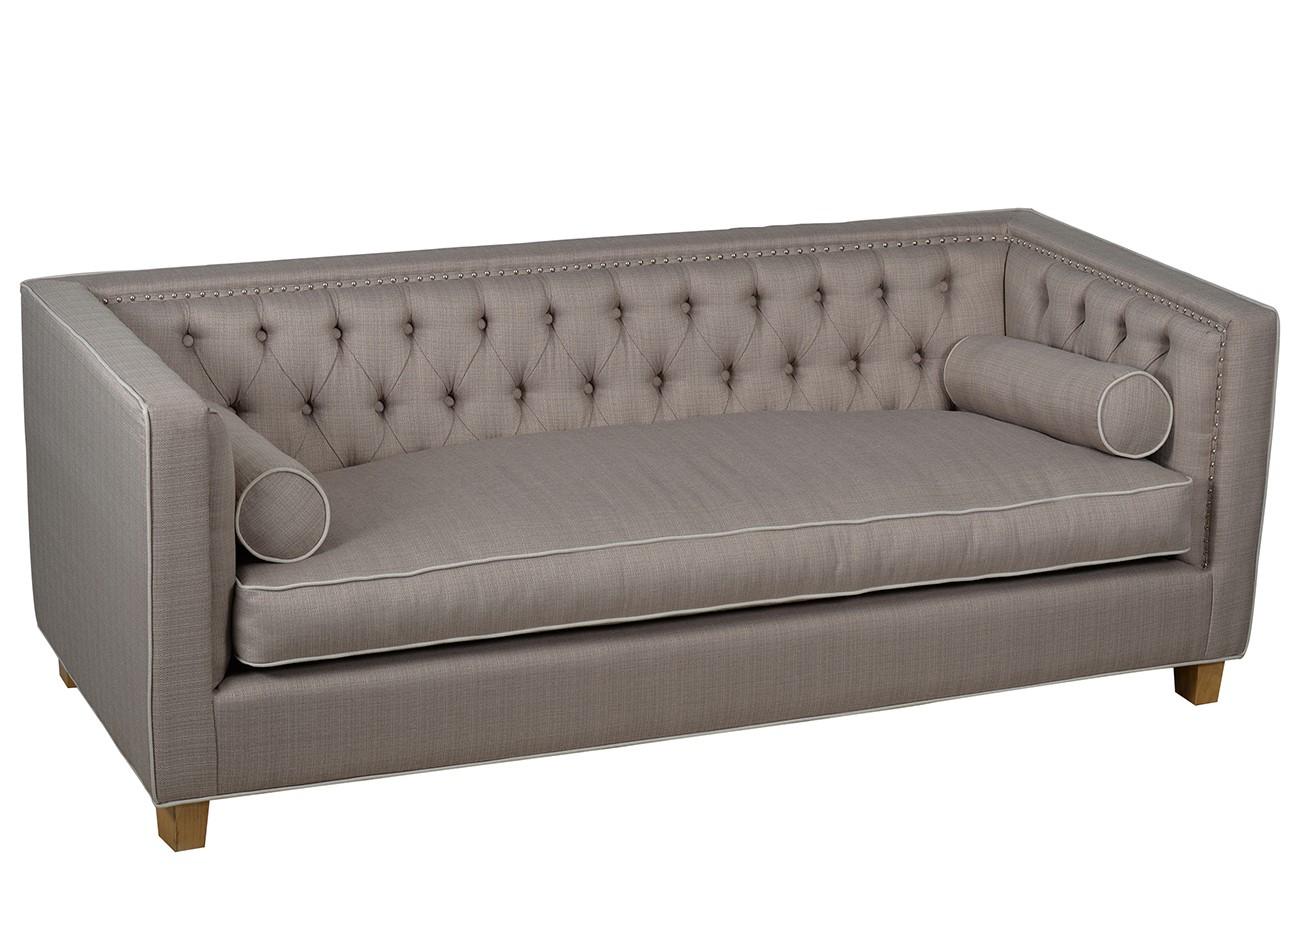 Contemporary, Modern Sofa AV41901 AV41901-Sofa in Light Gray Fabric